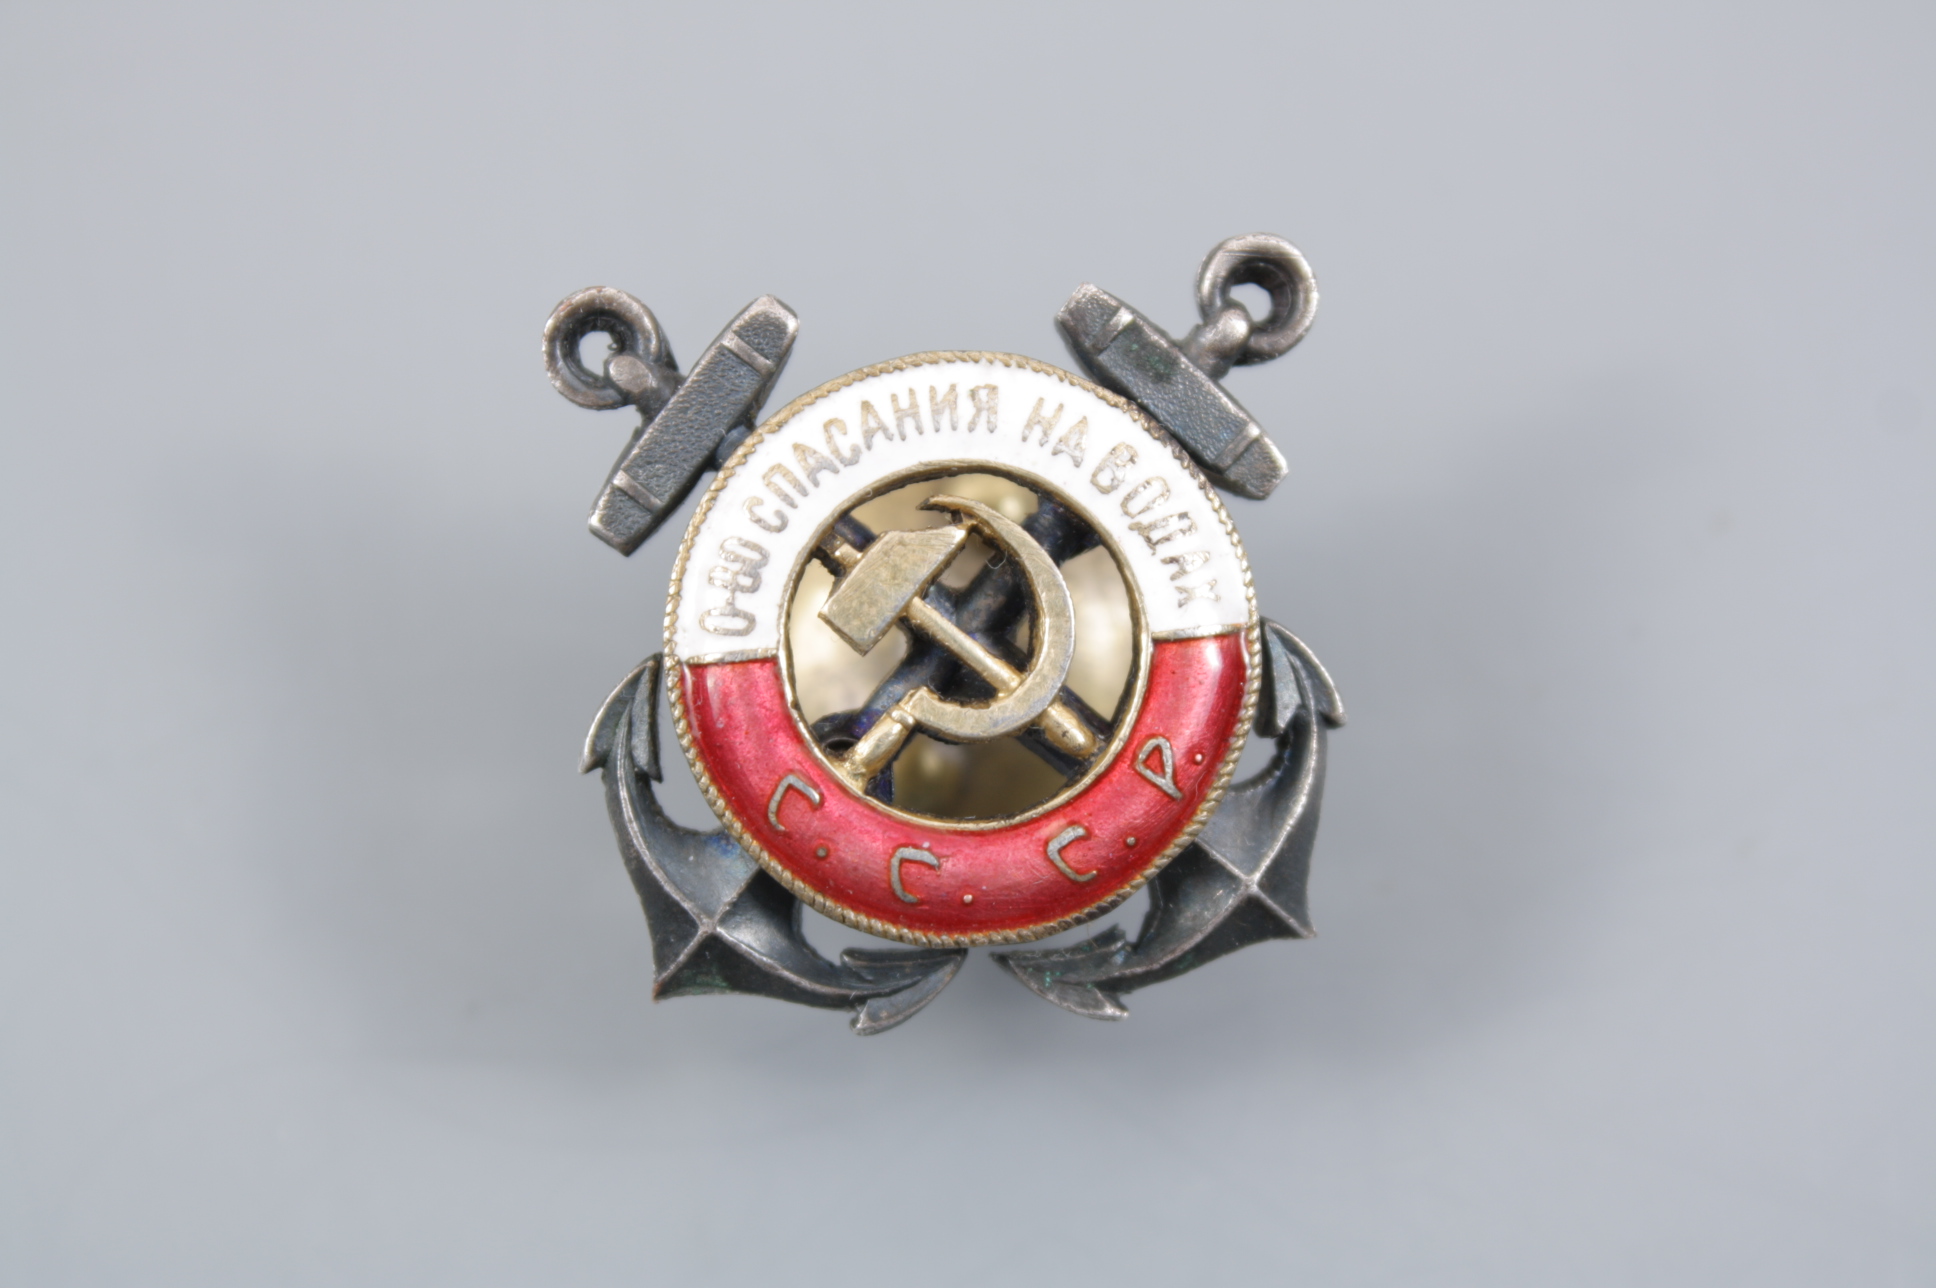 Знак члена ОСНАВ (Общество спасения на водах) 1928-31 гг., СССР. 